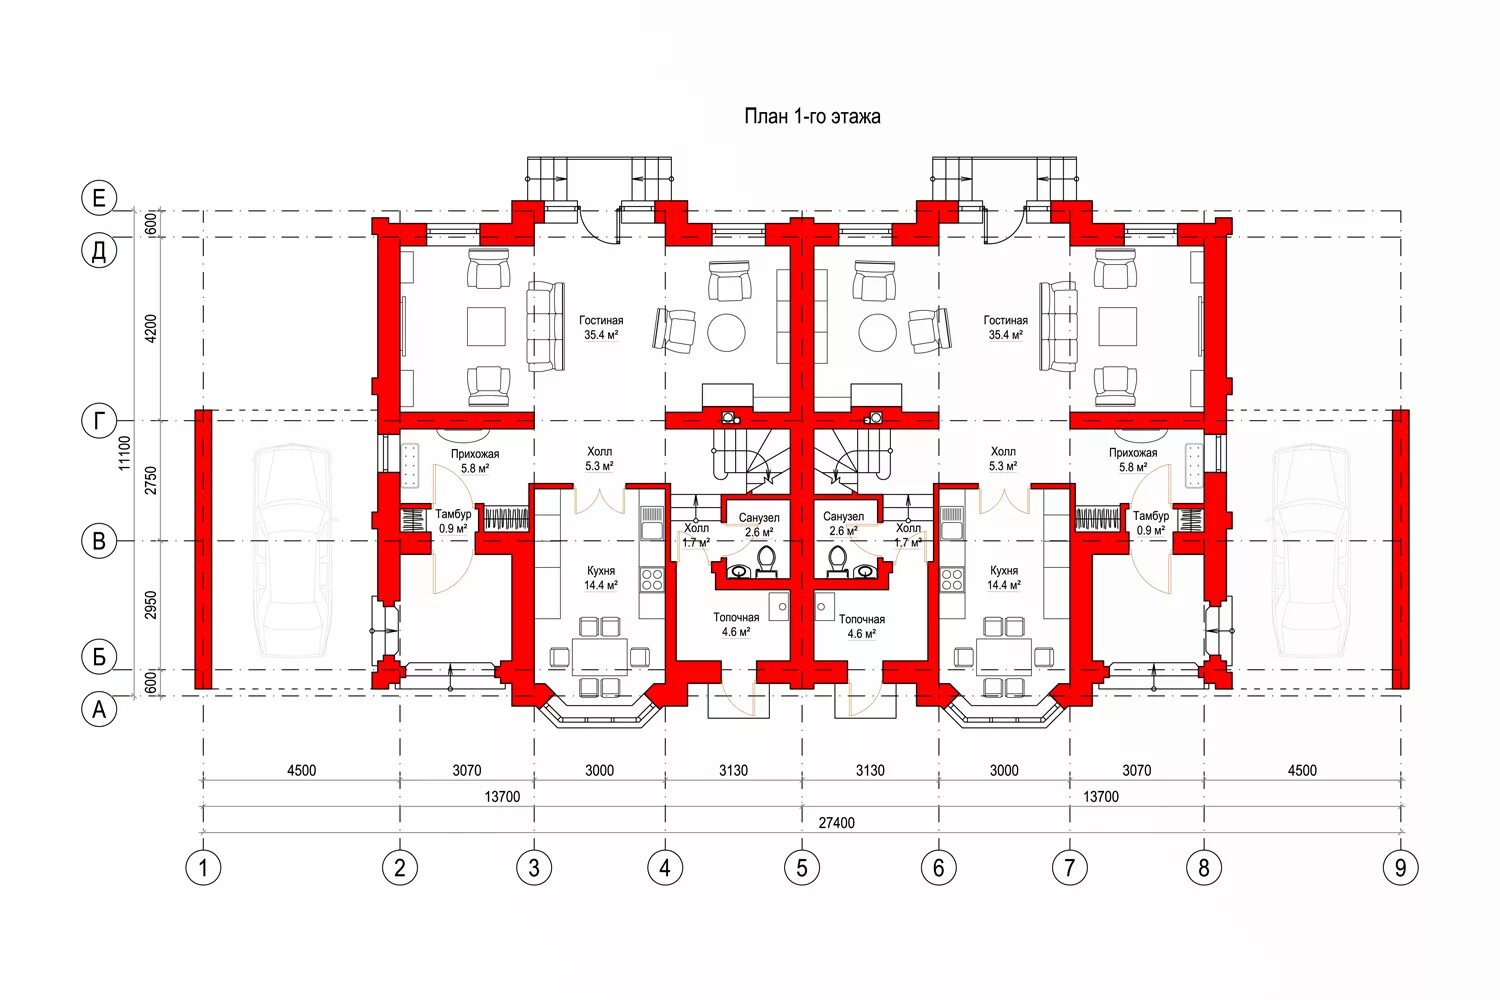 Размеры первого этажа. Планировка 1 этажа многоэтажного жилого дома. Дуплекс 2-х этажный планировки. План первого этажа. План 1 этажа жилого здания.